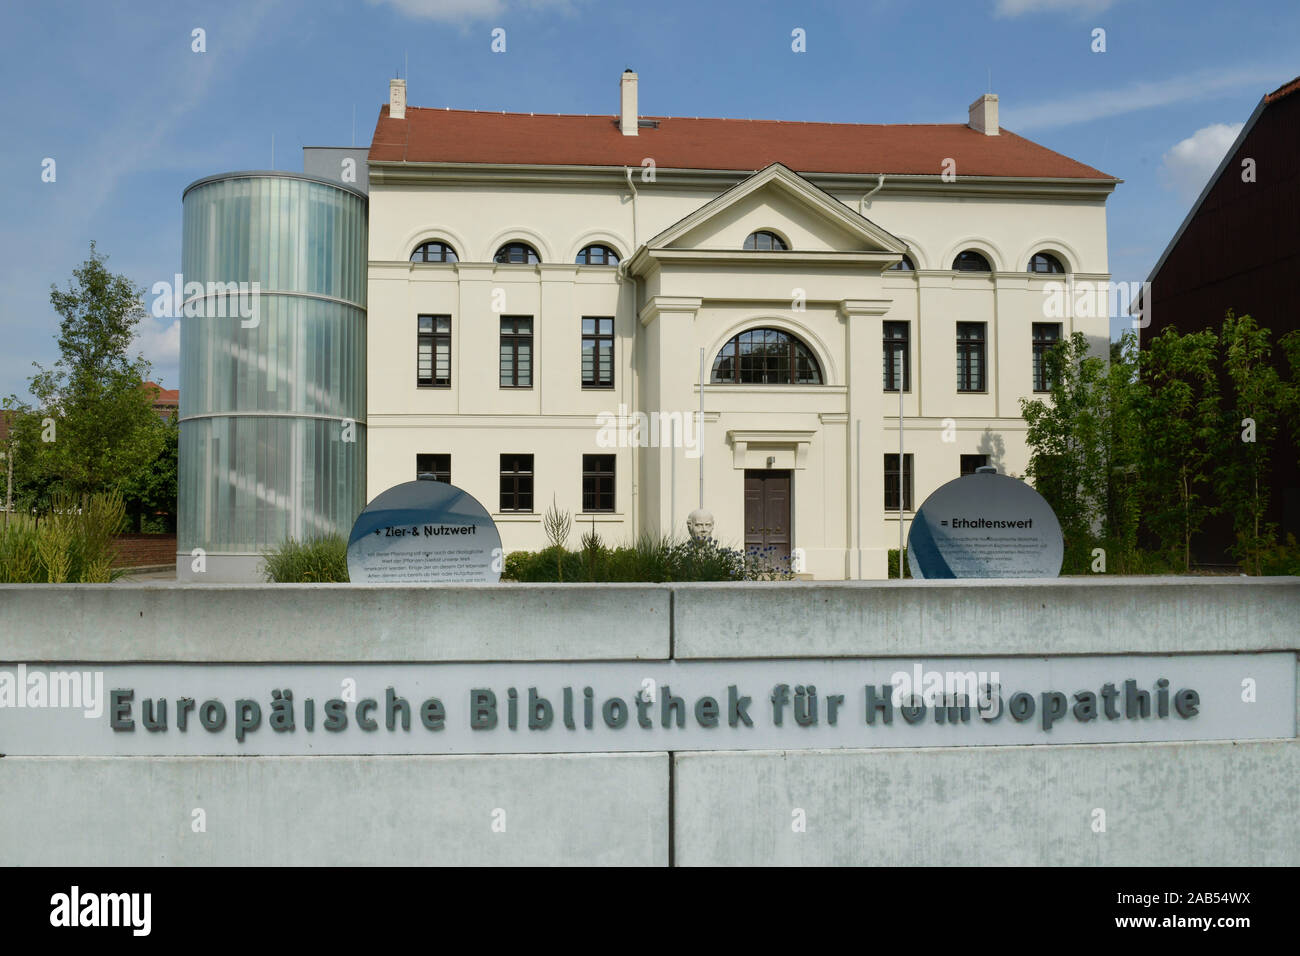 Europäische Bibliothek für Homöopathie, Wallstraße, Köthen, Sachsen-Anhalt, Allemagne Banque D'Images